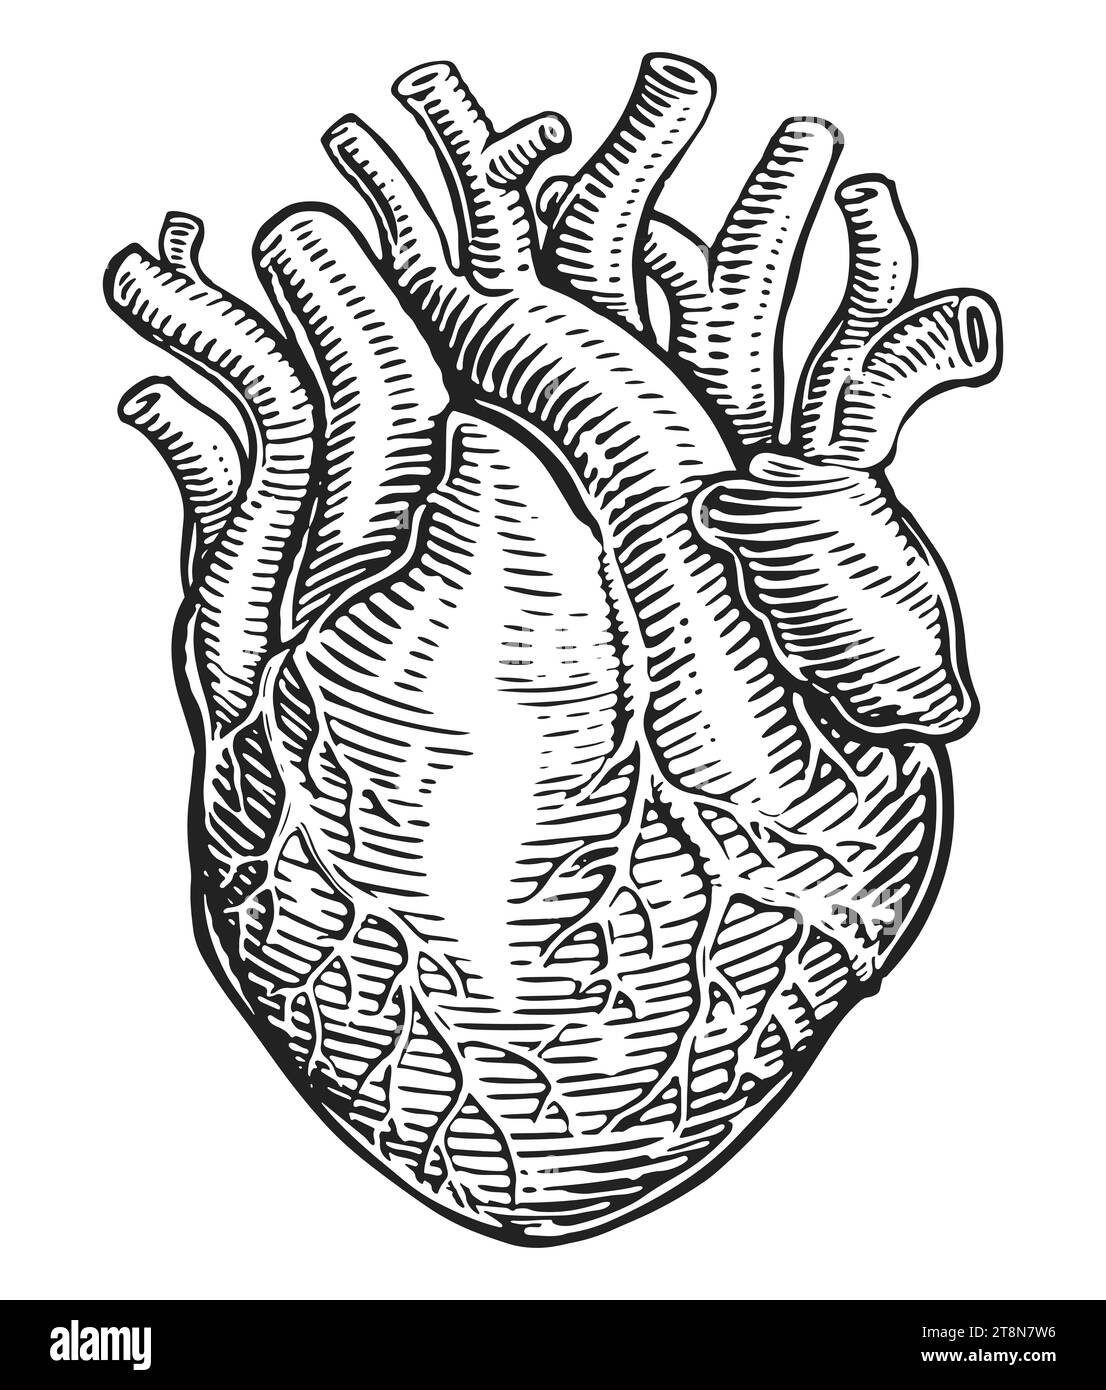 Handgezeichnete menschliche Herzmuskulatur und Blutgefäße im Vintage-Gravurstil. Anatomie, Skizzendarstellung Stockfoto